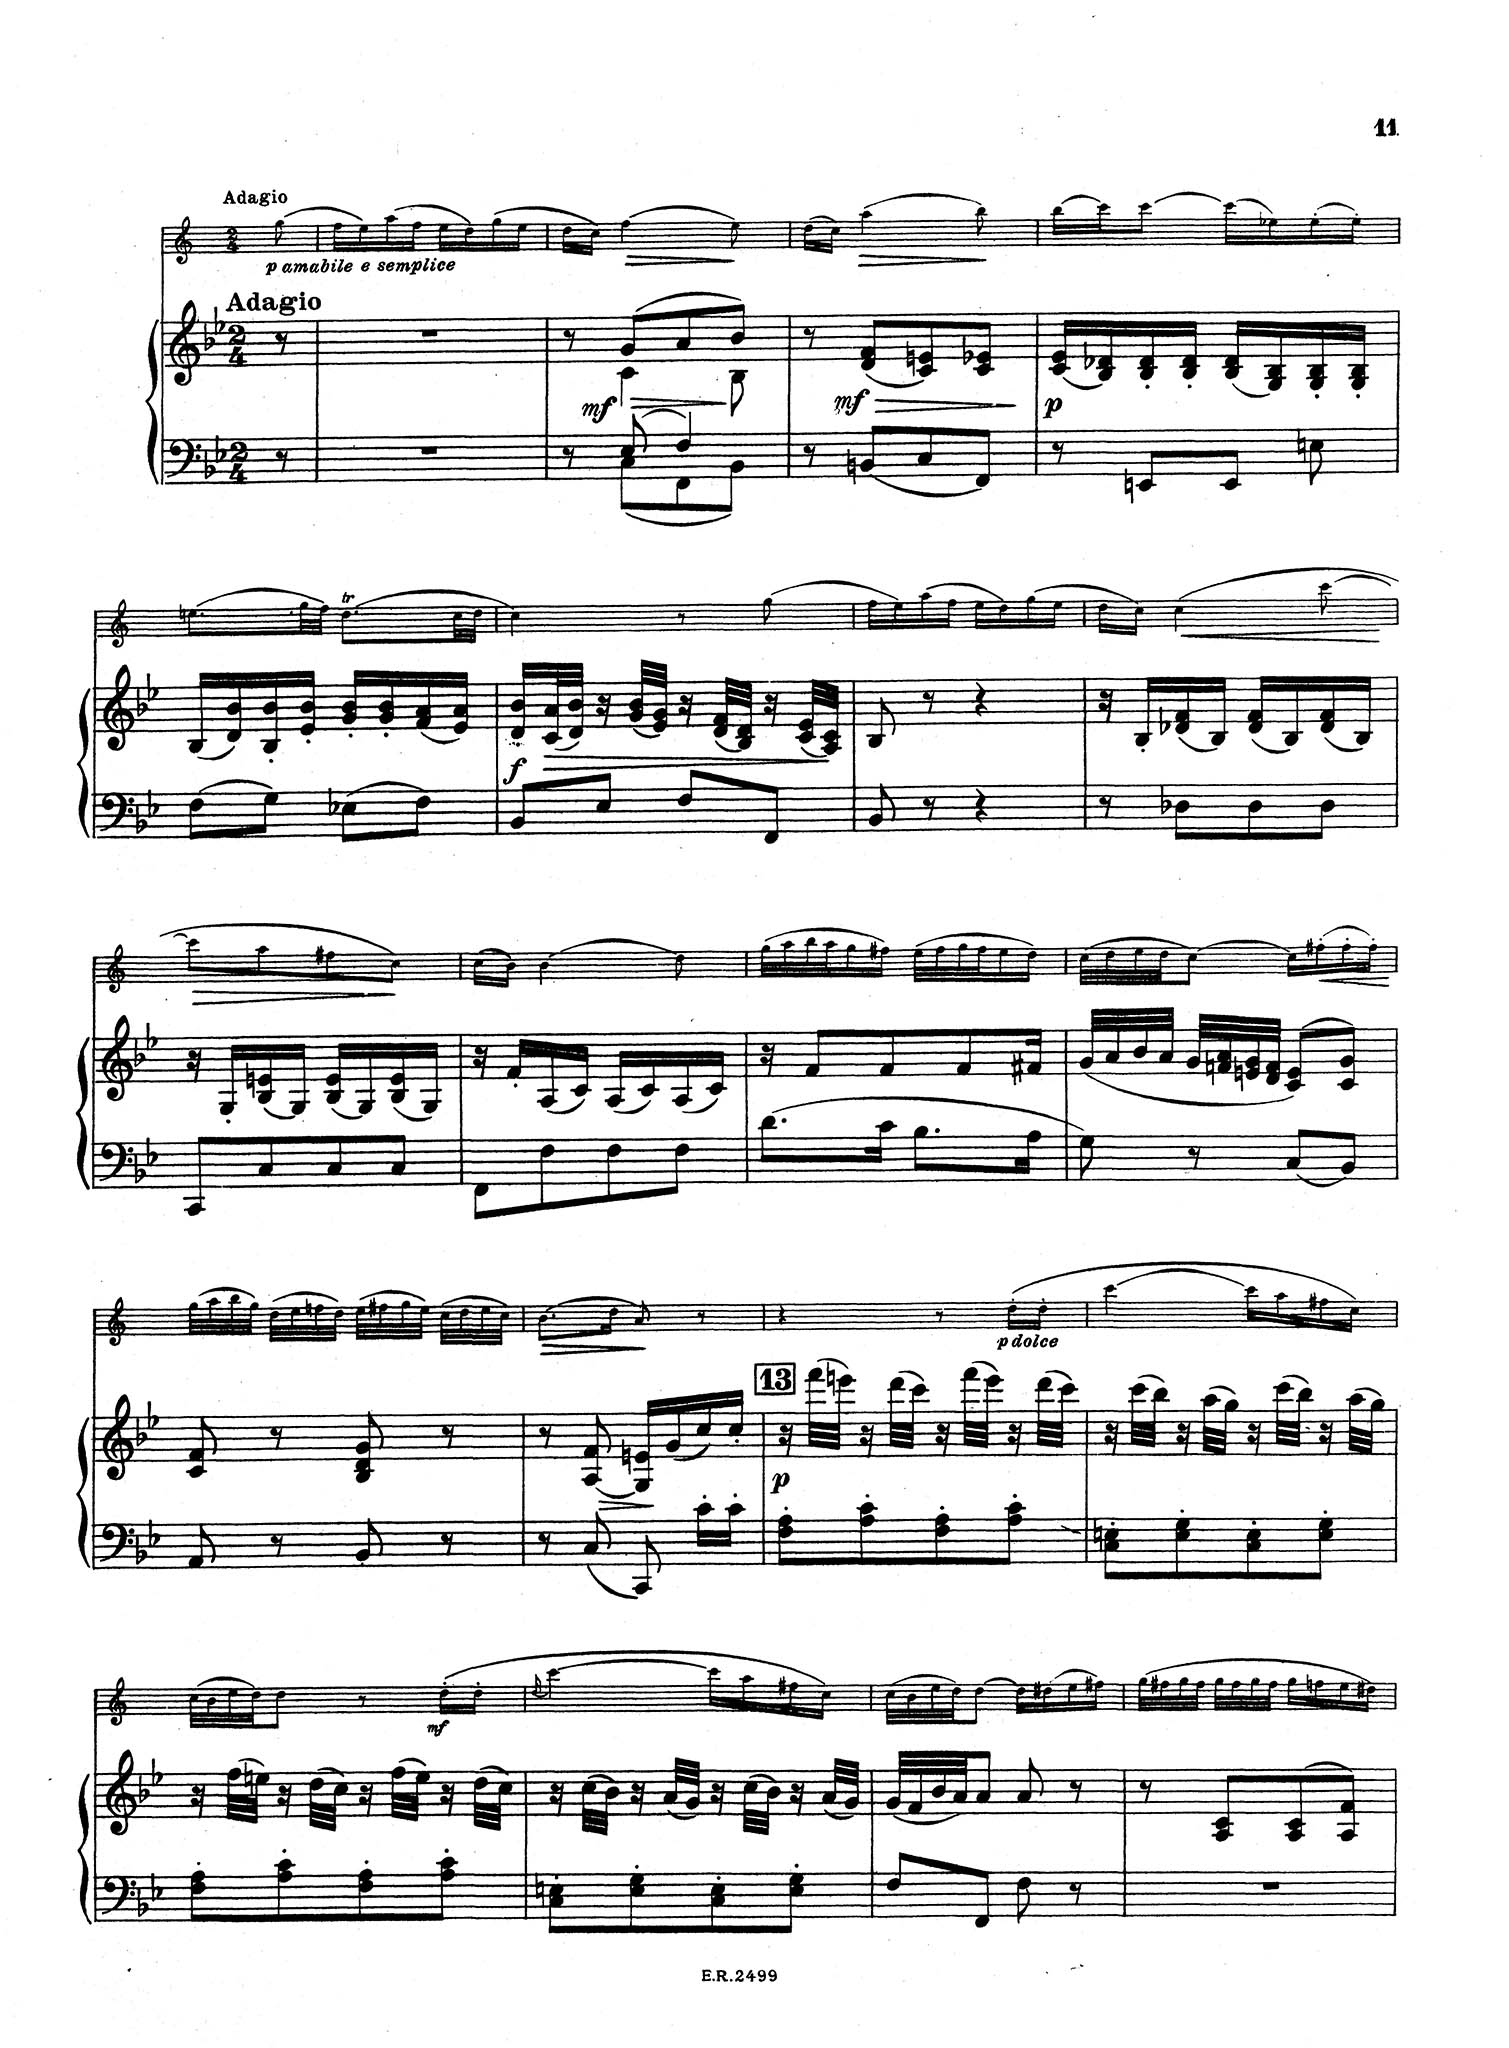 Violin Concerto No. 5, K 219 - Movement 2